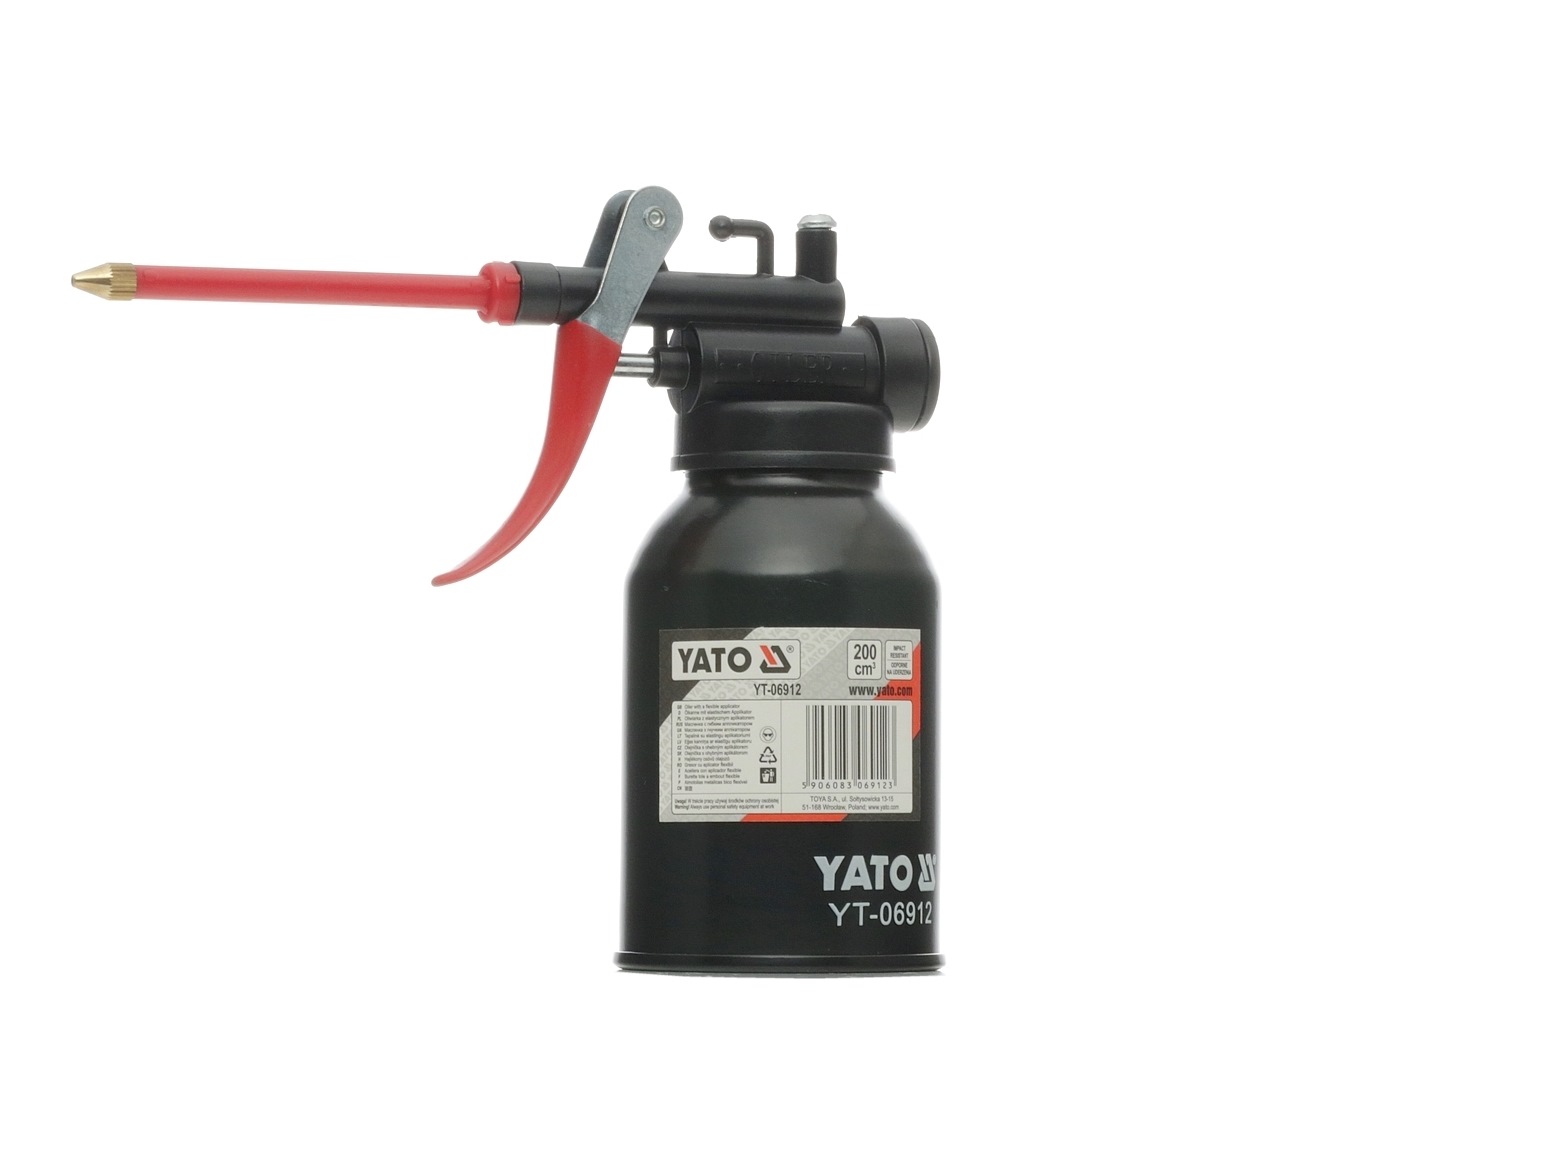 YATO Pompe à graisse YT-06912